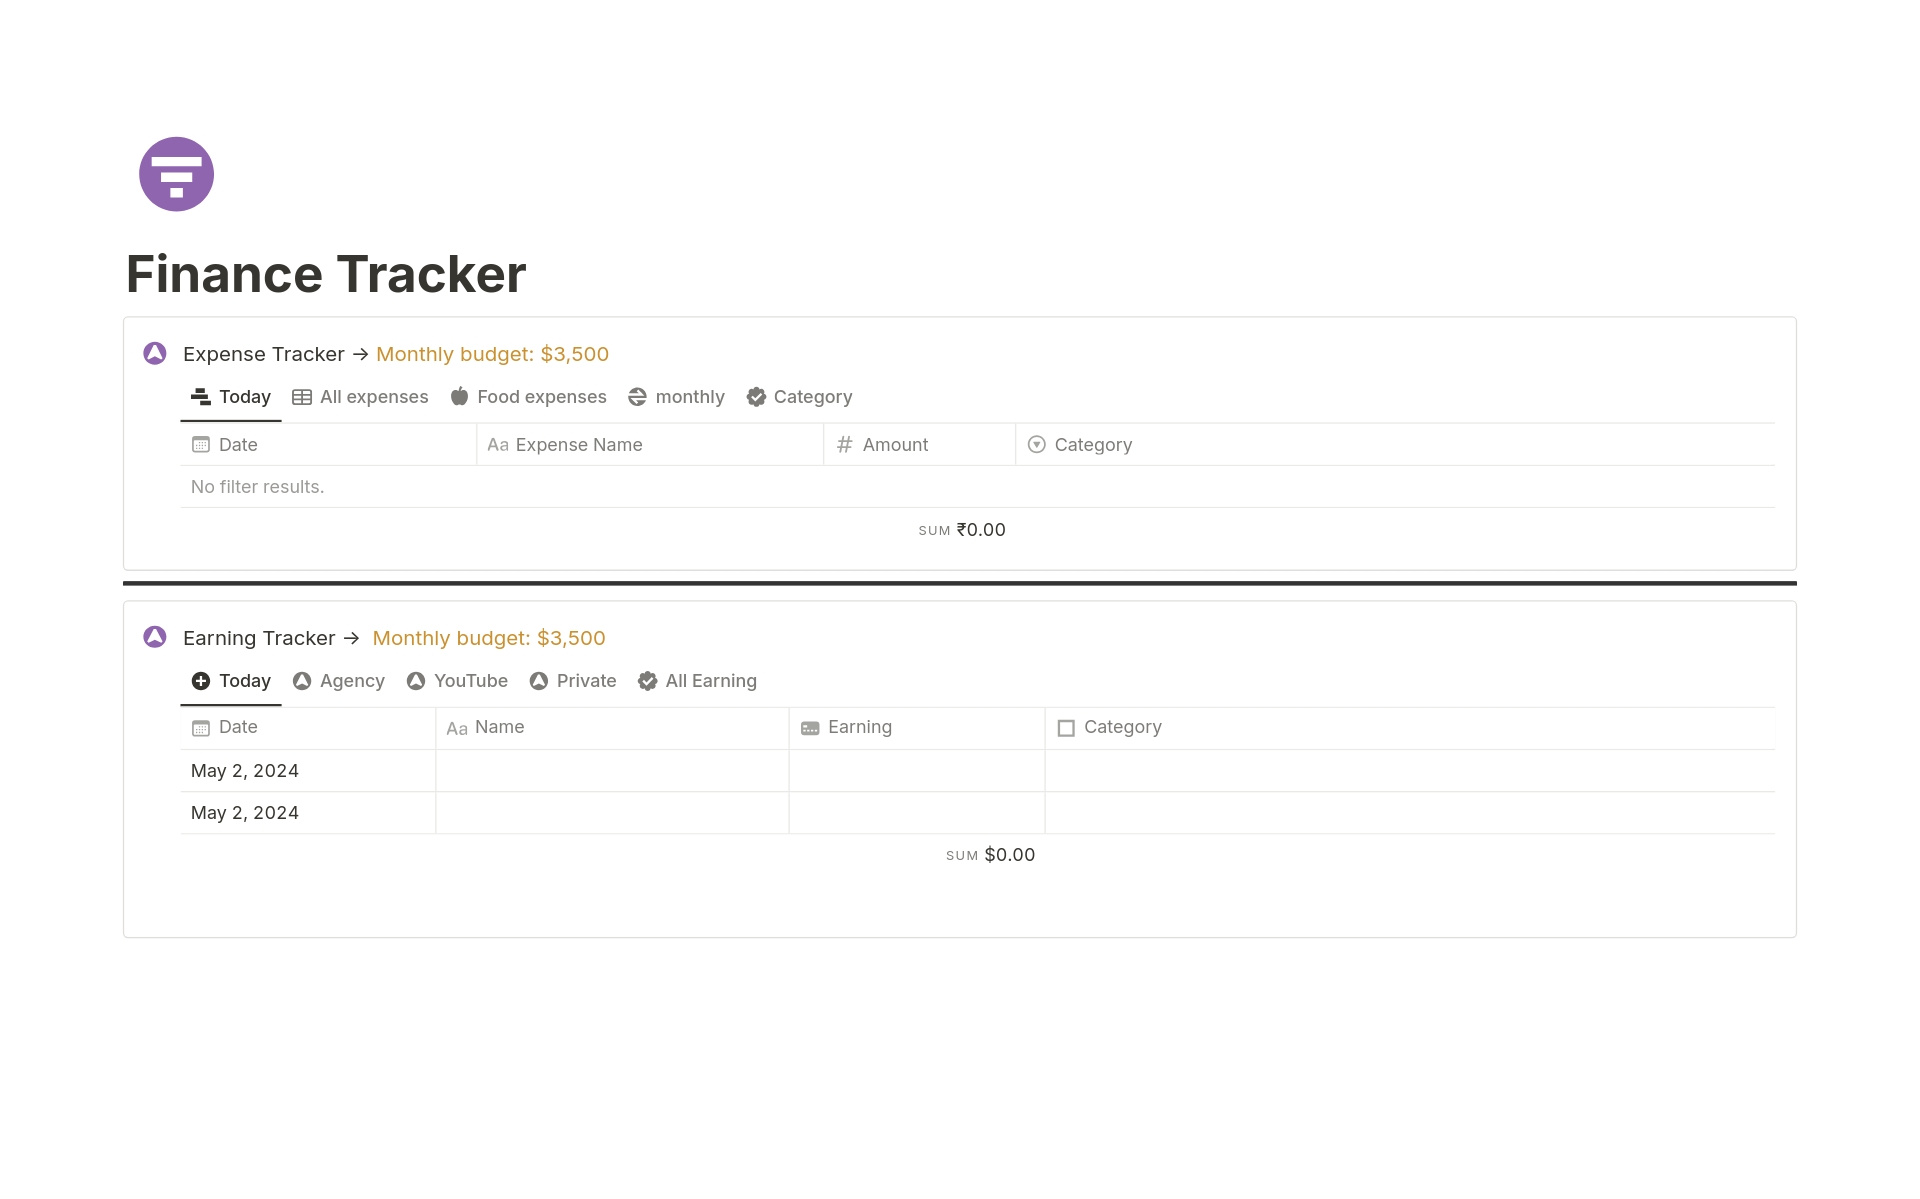 Vista previa de plantilla para Full Finance Tracker Separately 